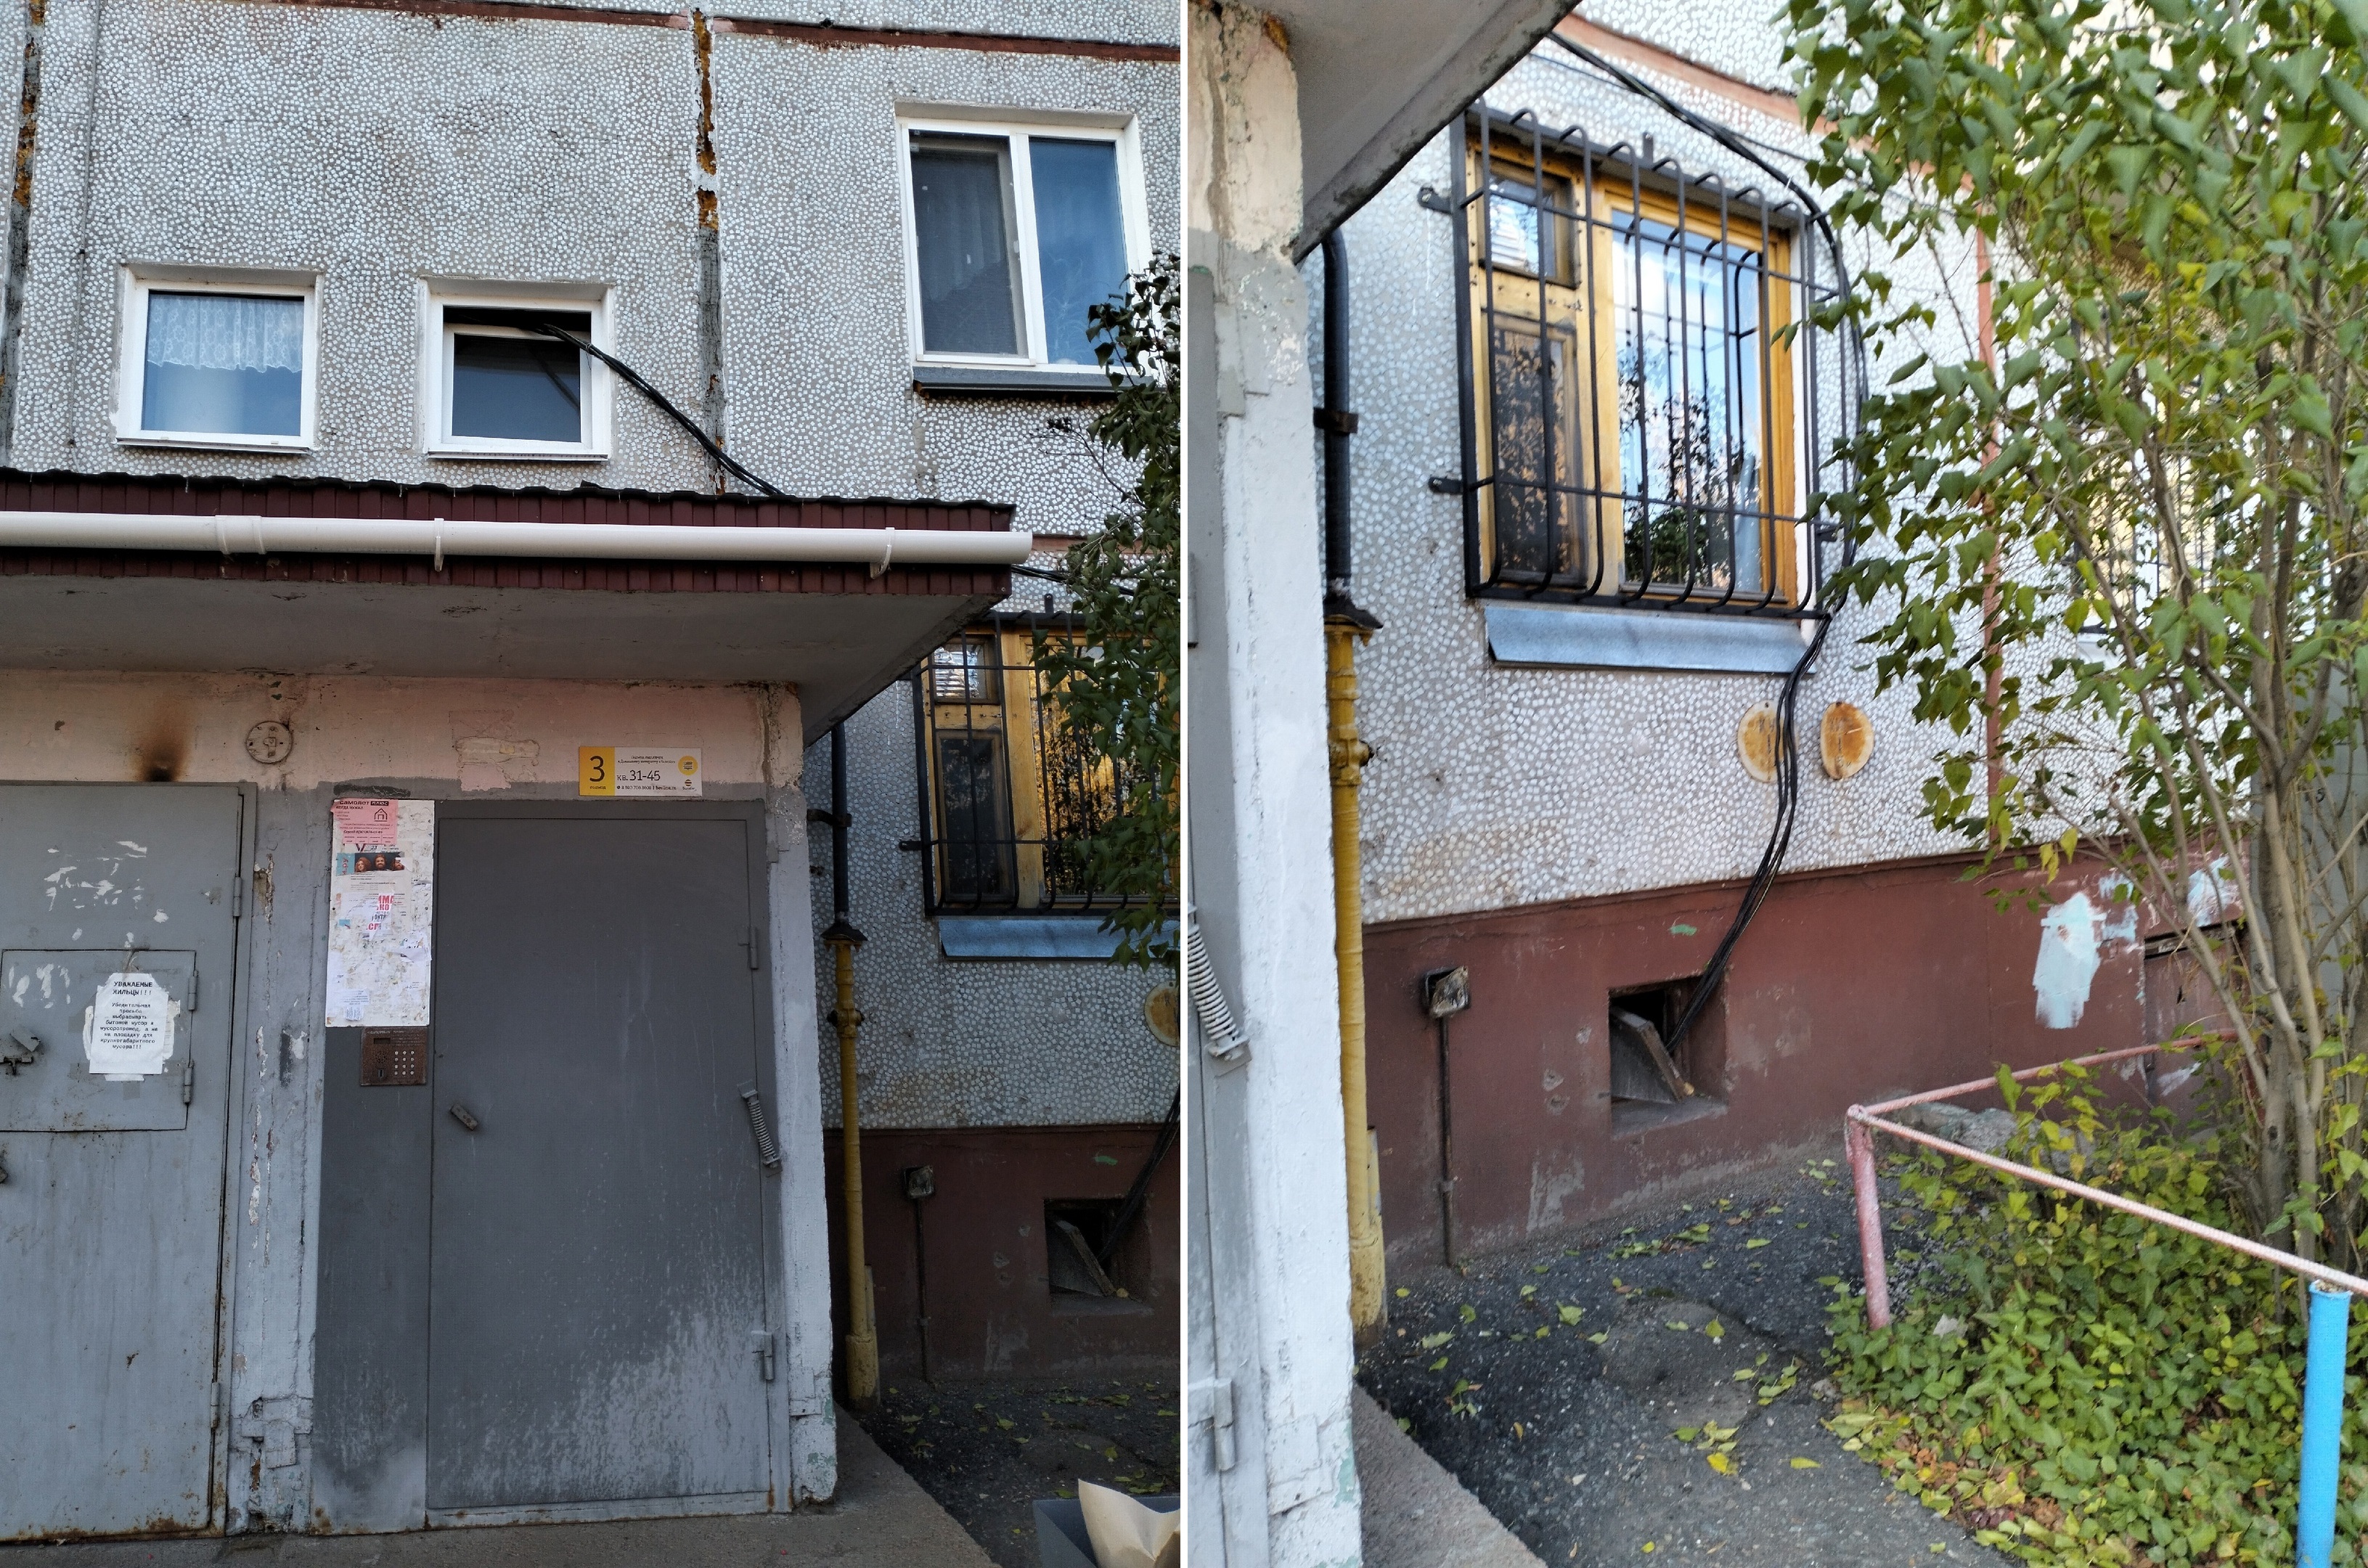 Жильцы омской пятиэтажки уже полгода получают электричество через окно #Омск #Общество #Сегодня